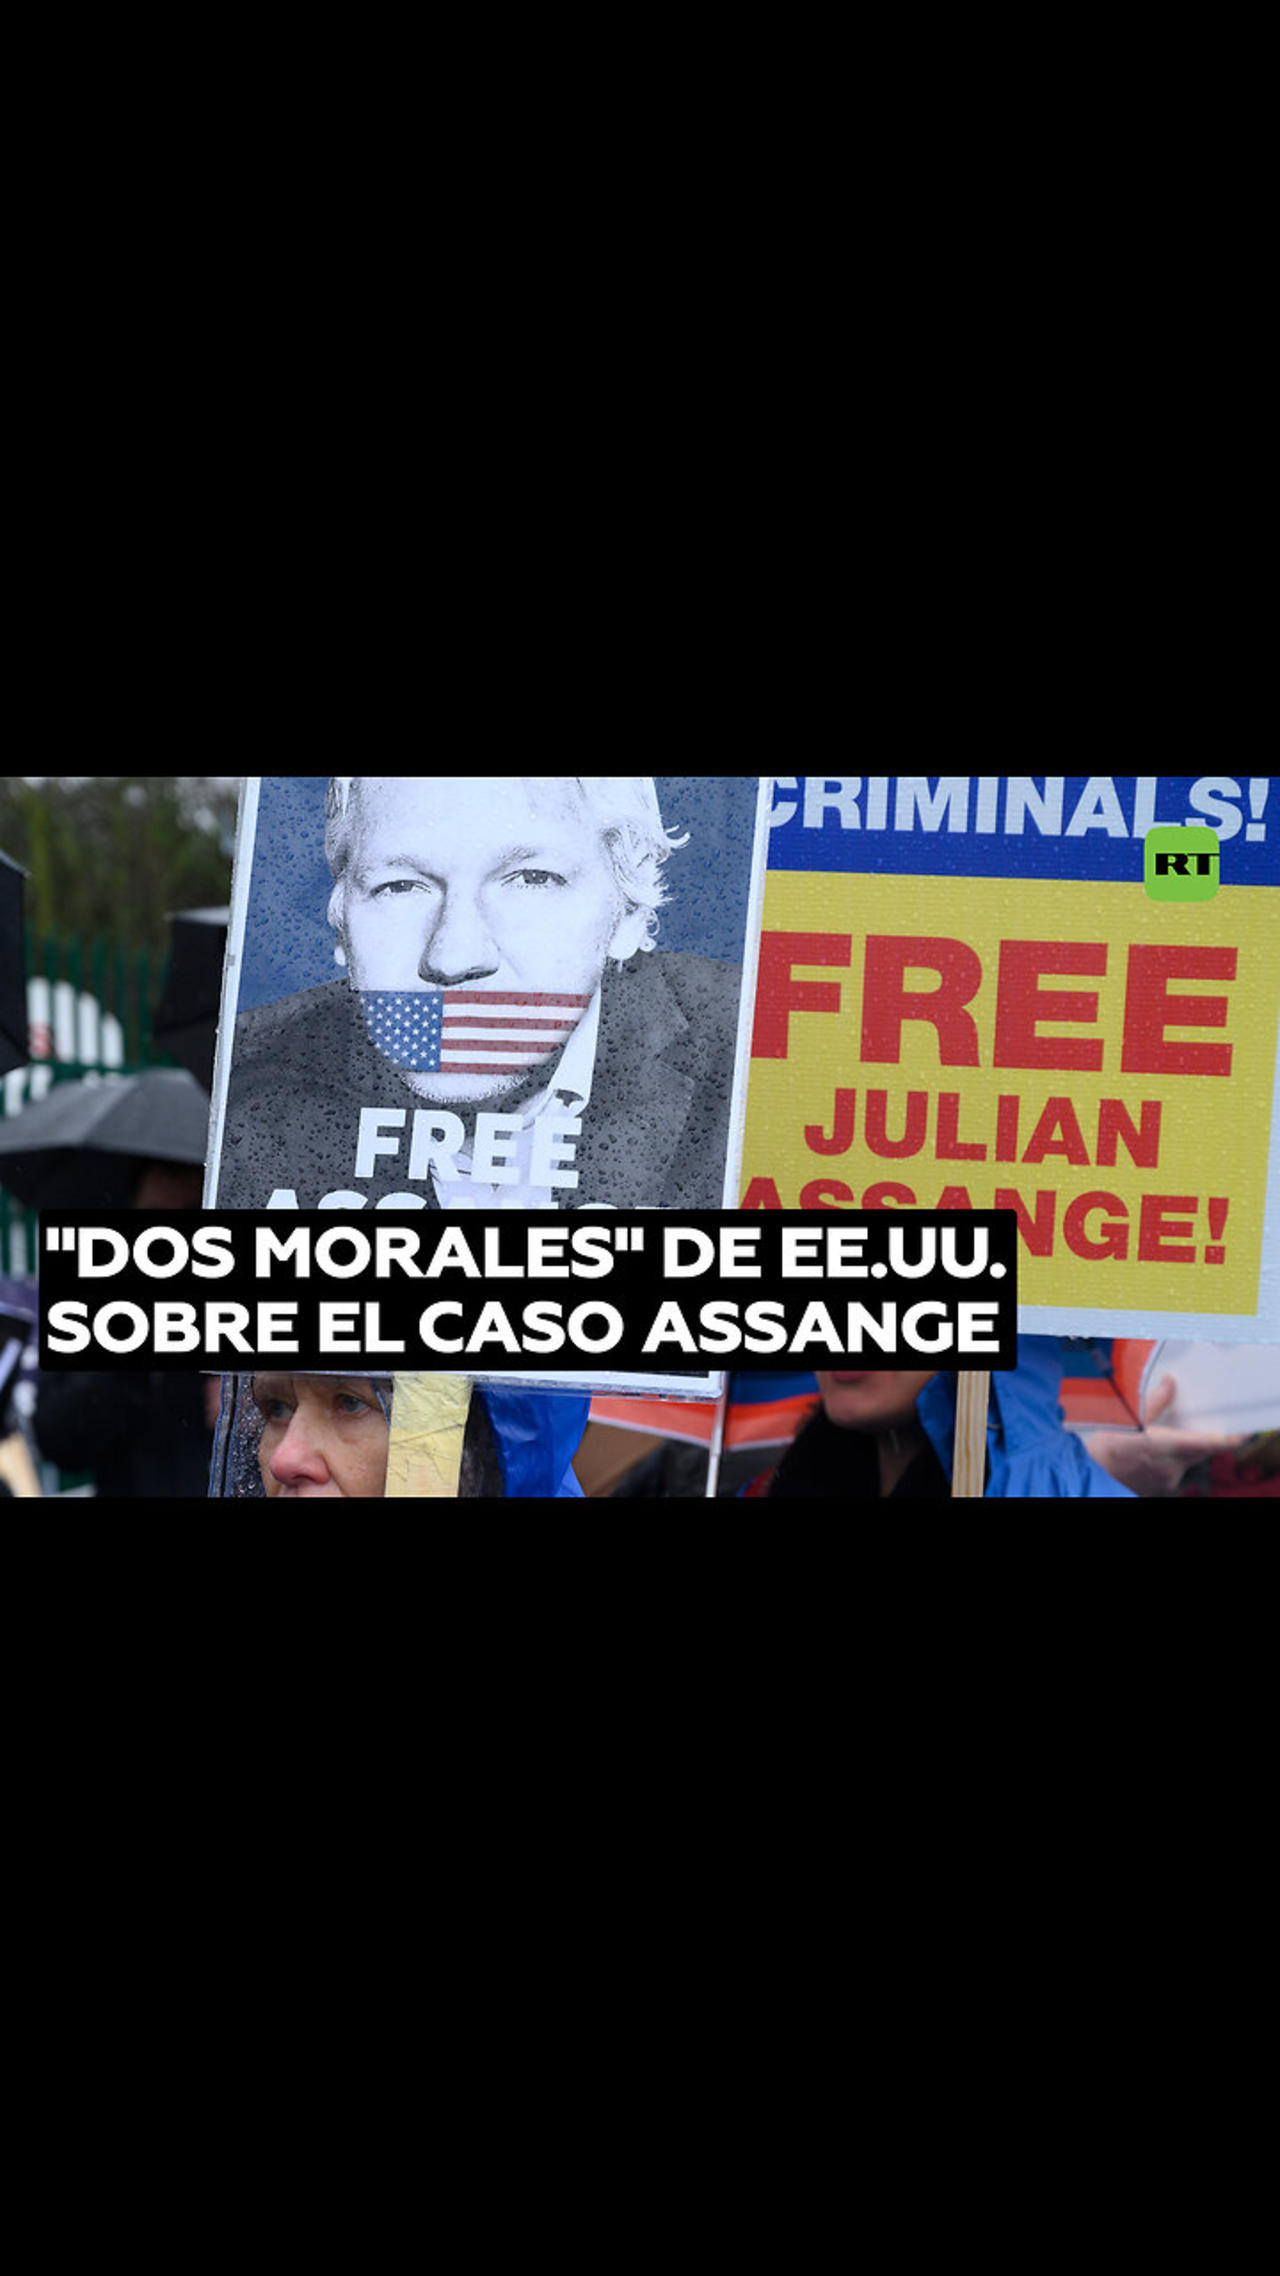 Correa repudia las “dos morales” de EE.UU. sobre el caso Assange